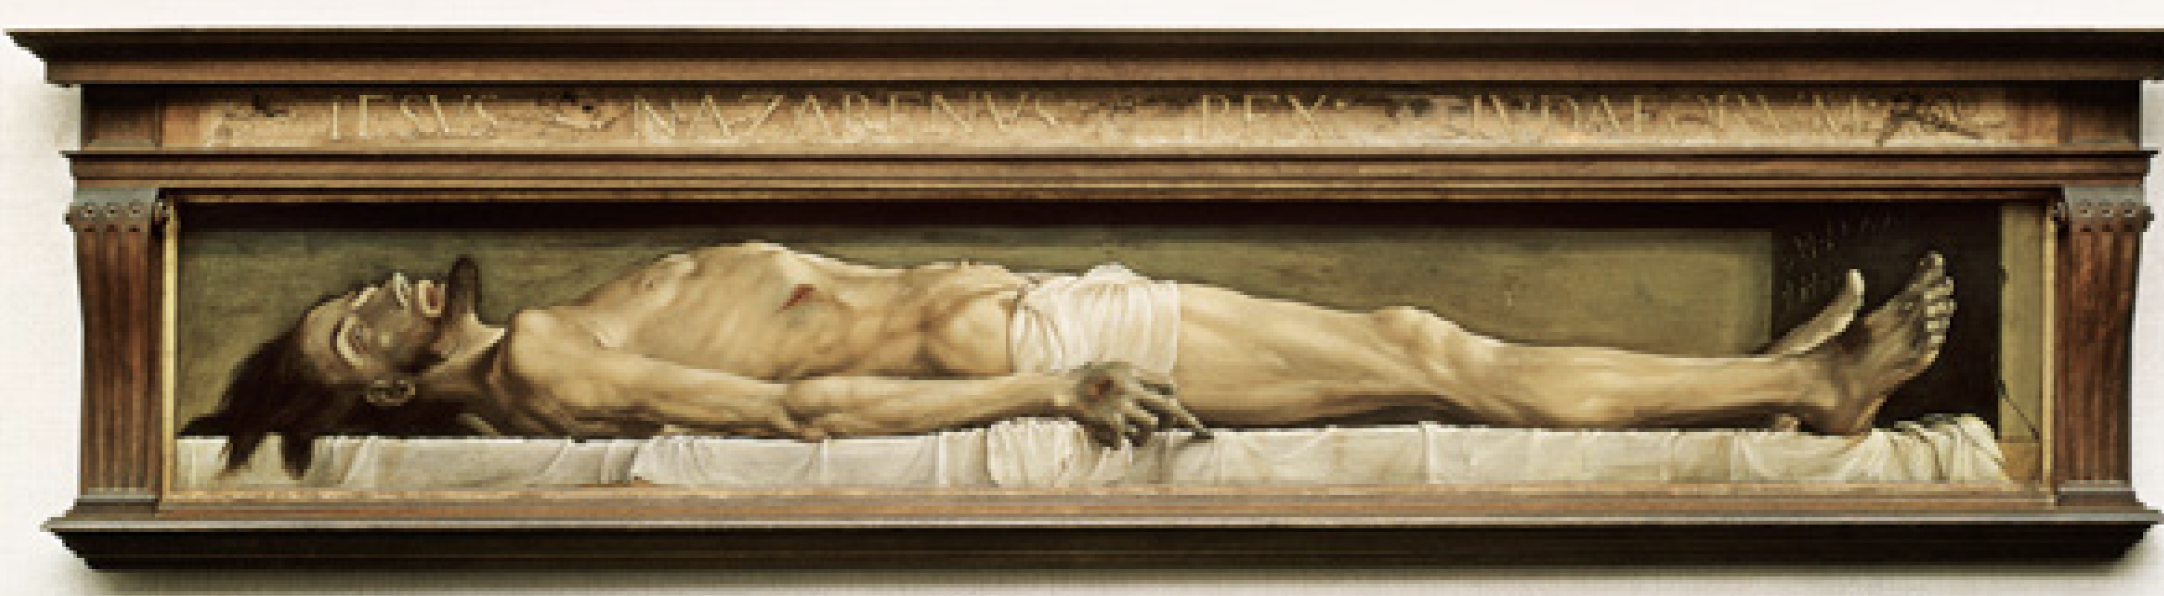 Hans Holbein el Joven: Cristo muerto. (Fuente: https://kunstmuseumbasel.ch, Museo de Basilea).